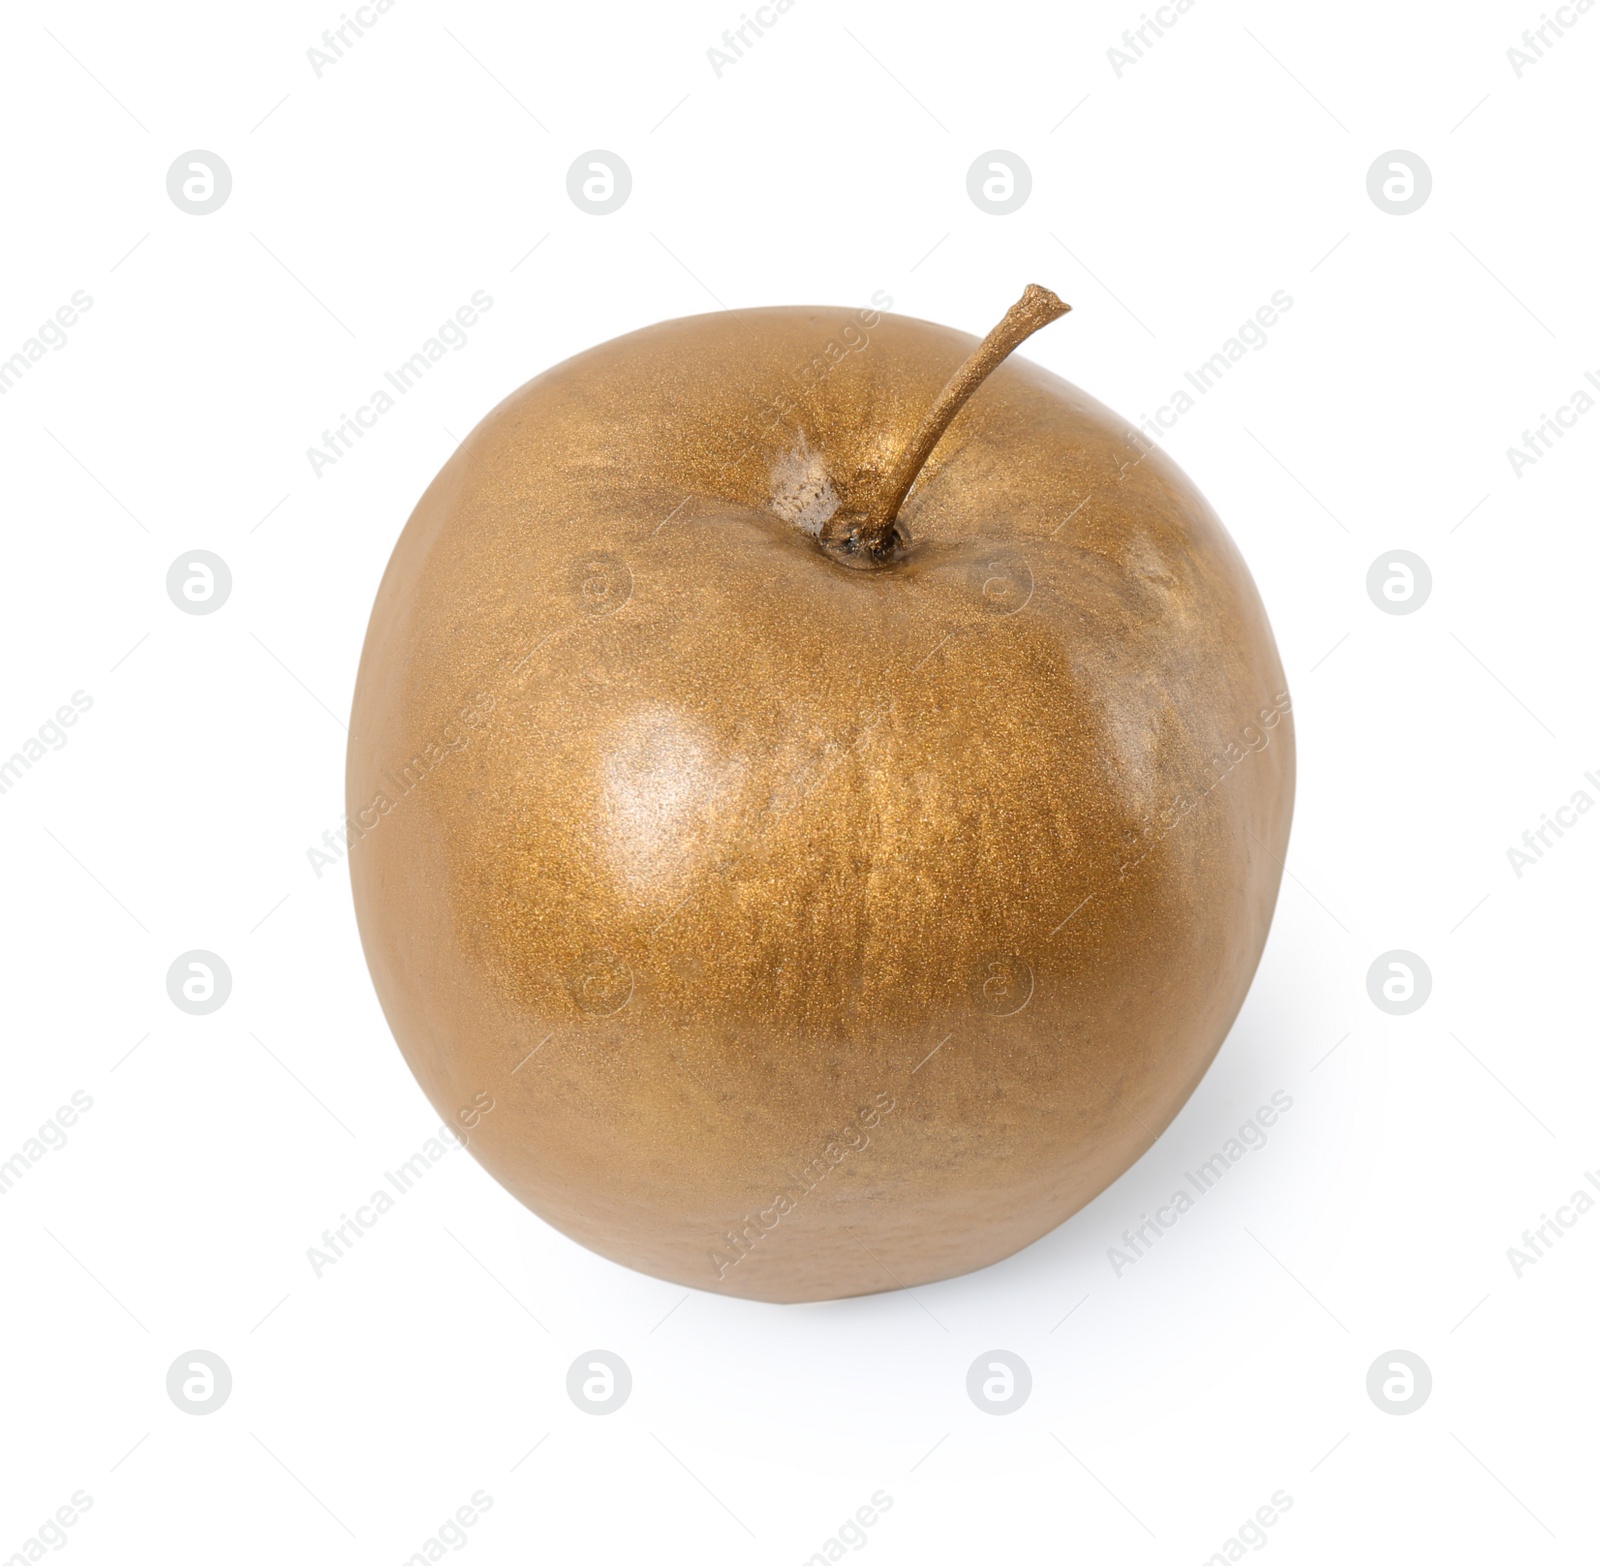 Photo of Shiny stylish gold apple on white background